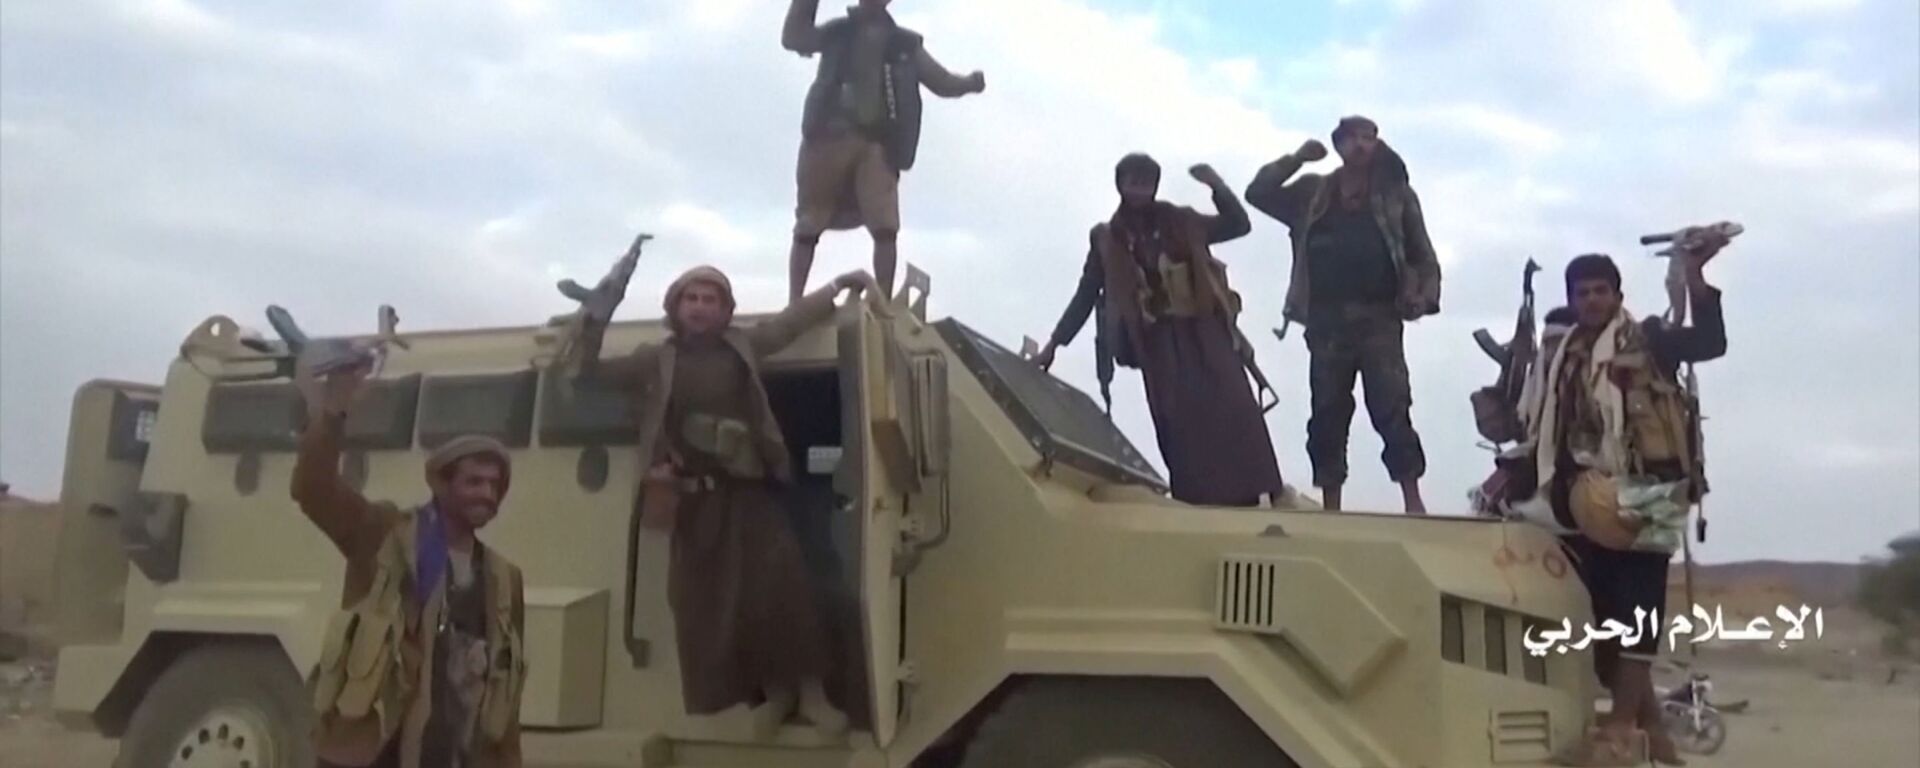 صورة مأخوذة من شريط فيديو يظهر مقاتلين من الحوثيين يعتلون سيارة سعودية تم أسرها بعد هجوم - سبوتنيك عربي, 1920, 15.12.2021